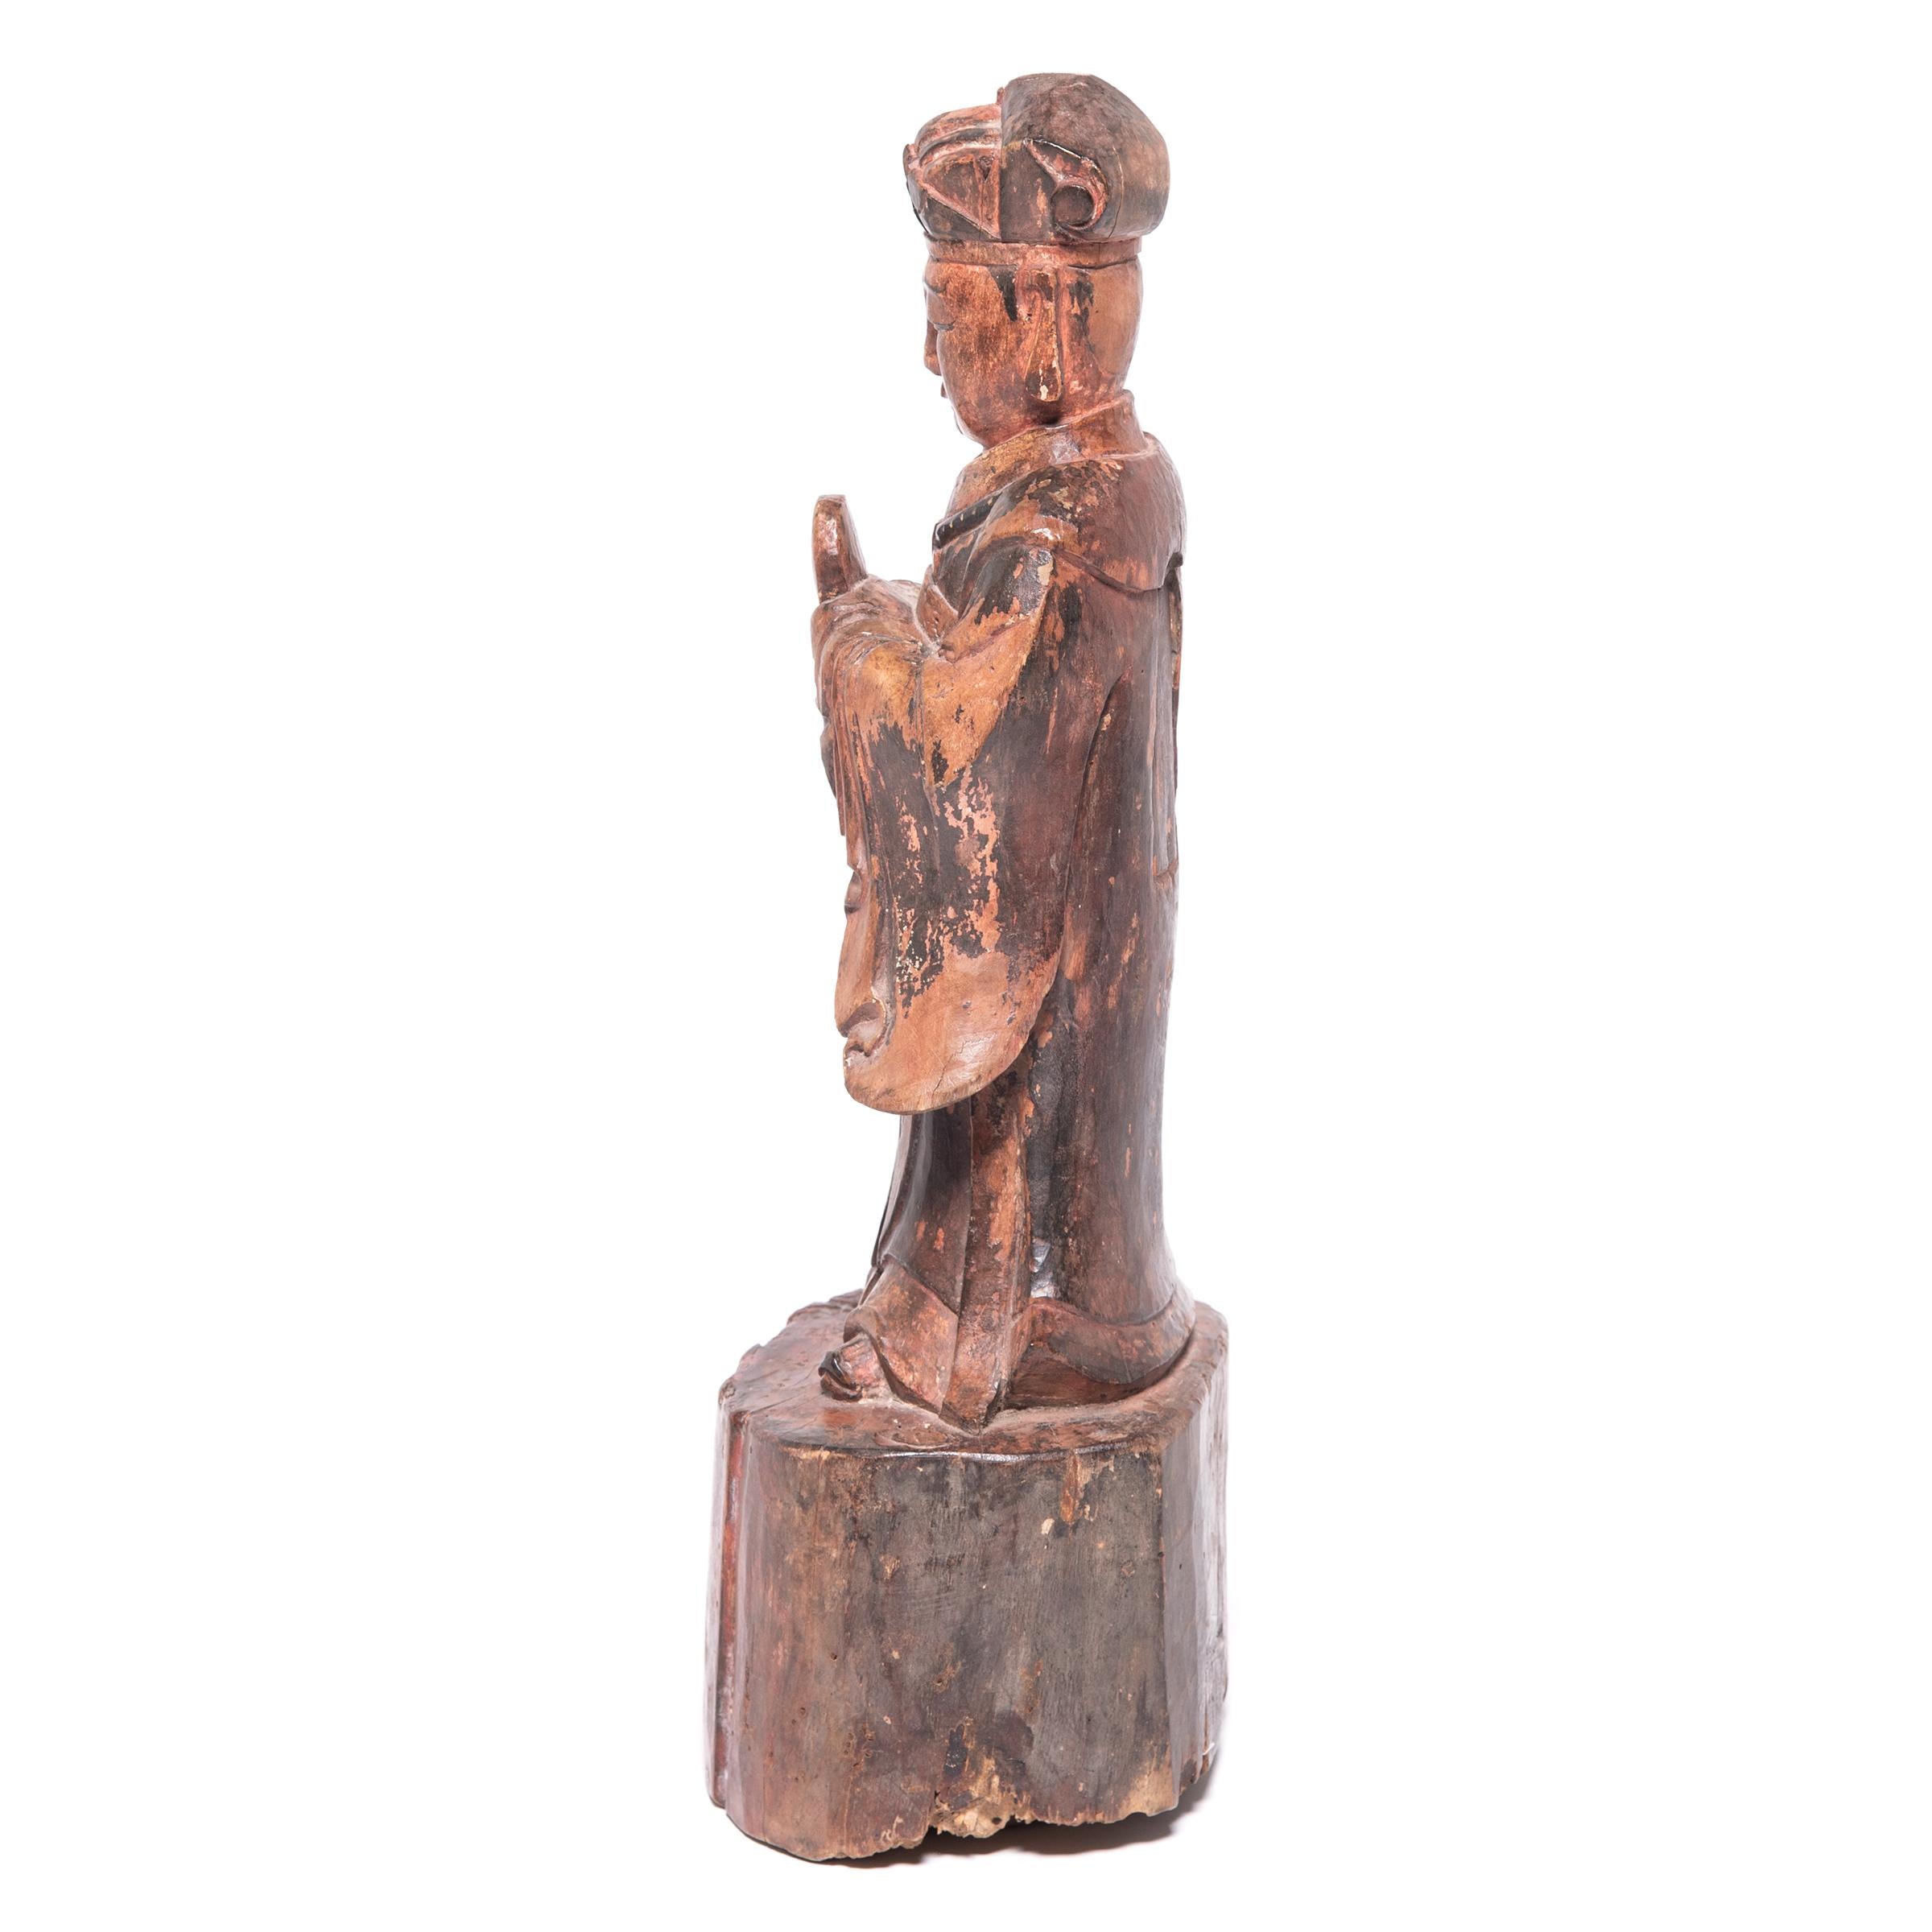 Sculptée dans le bois, cette figure d'esprit du XIXe siècle rendait hommage aux ancêtres passés sur une table d'autel traditionnelle. En laissant la base refléter l'état naturel du bois, l'artiste a sculpté la figure avec des robes détaillées et des